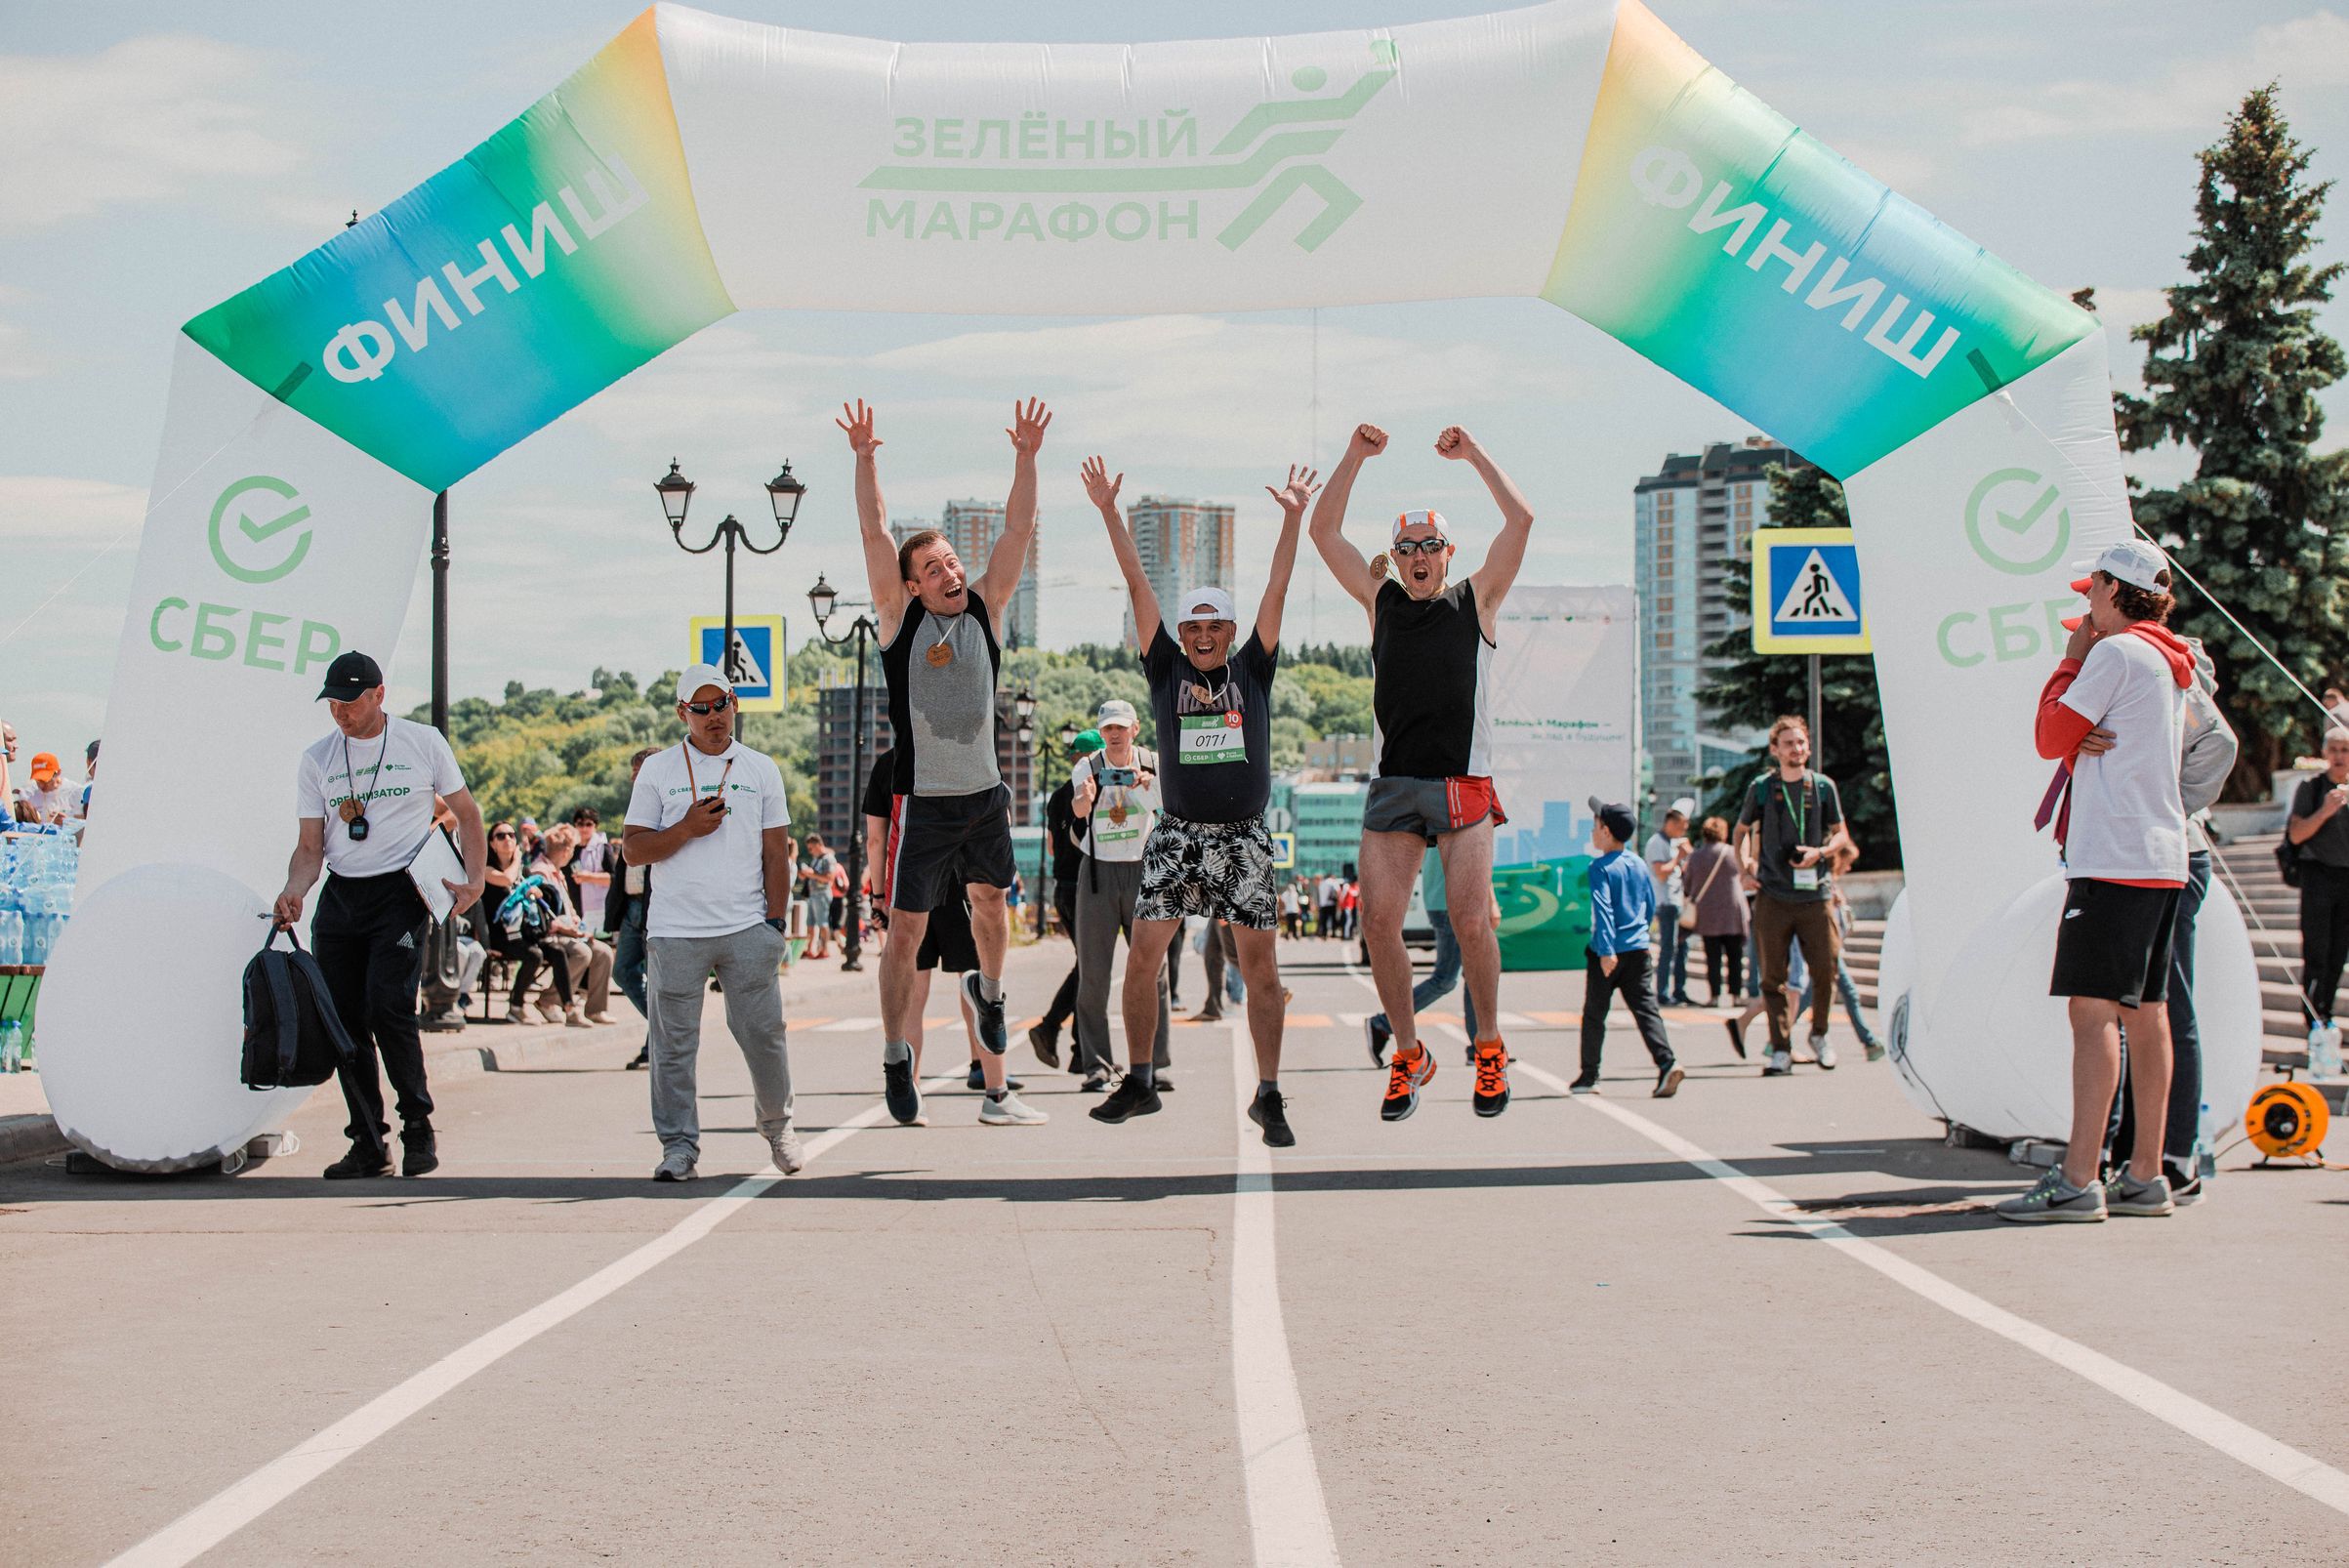 Семейный фестиваль "Зеленый марафон - Вода России" пройдет на Московской набережной 